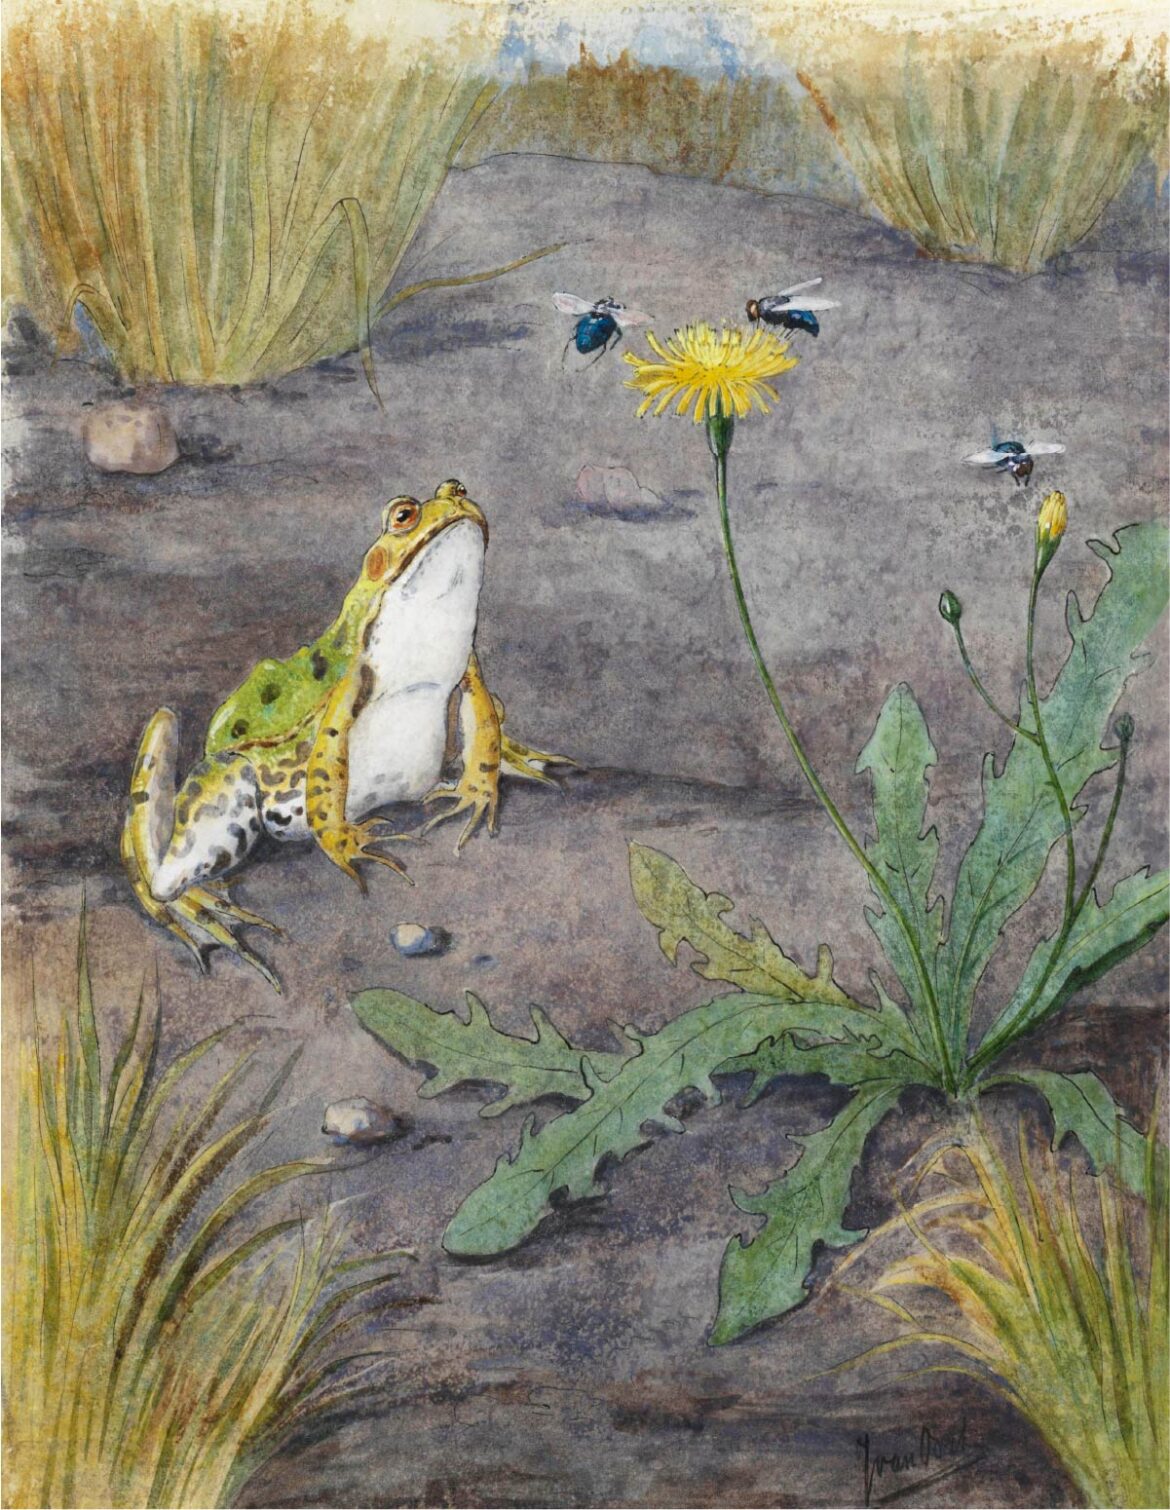 【無料壁紙】ヤン・ファン・オールト「カエルとタンポポとハエ」 / Jan van Oort_Frog by a Dandelion with Flies (1877–1938)